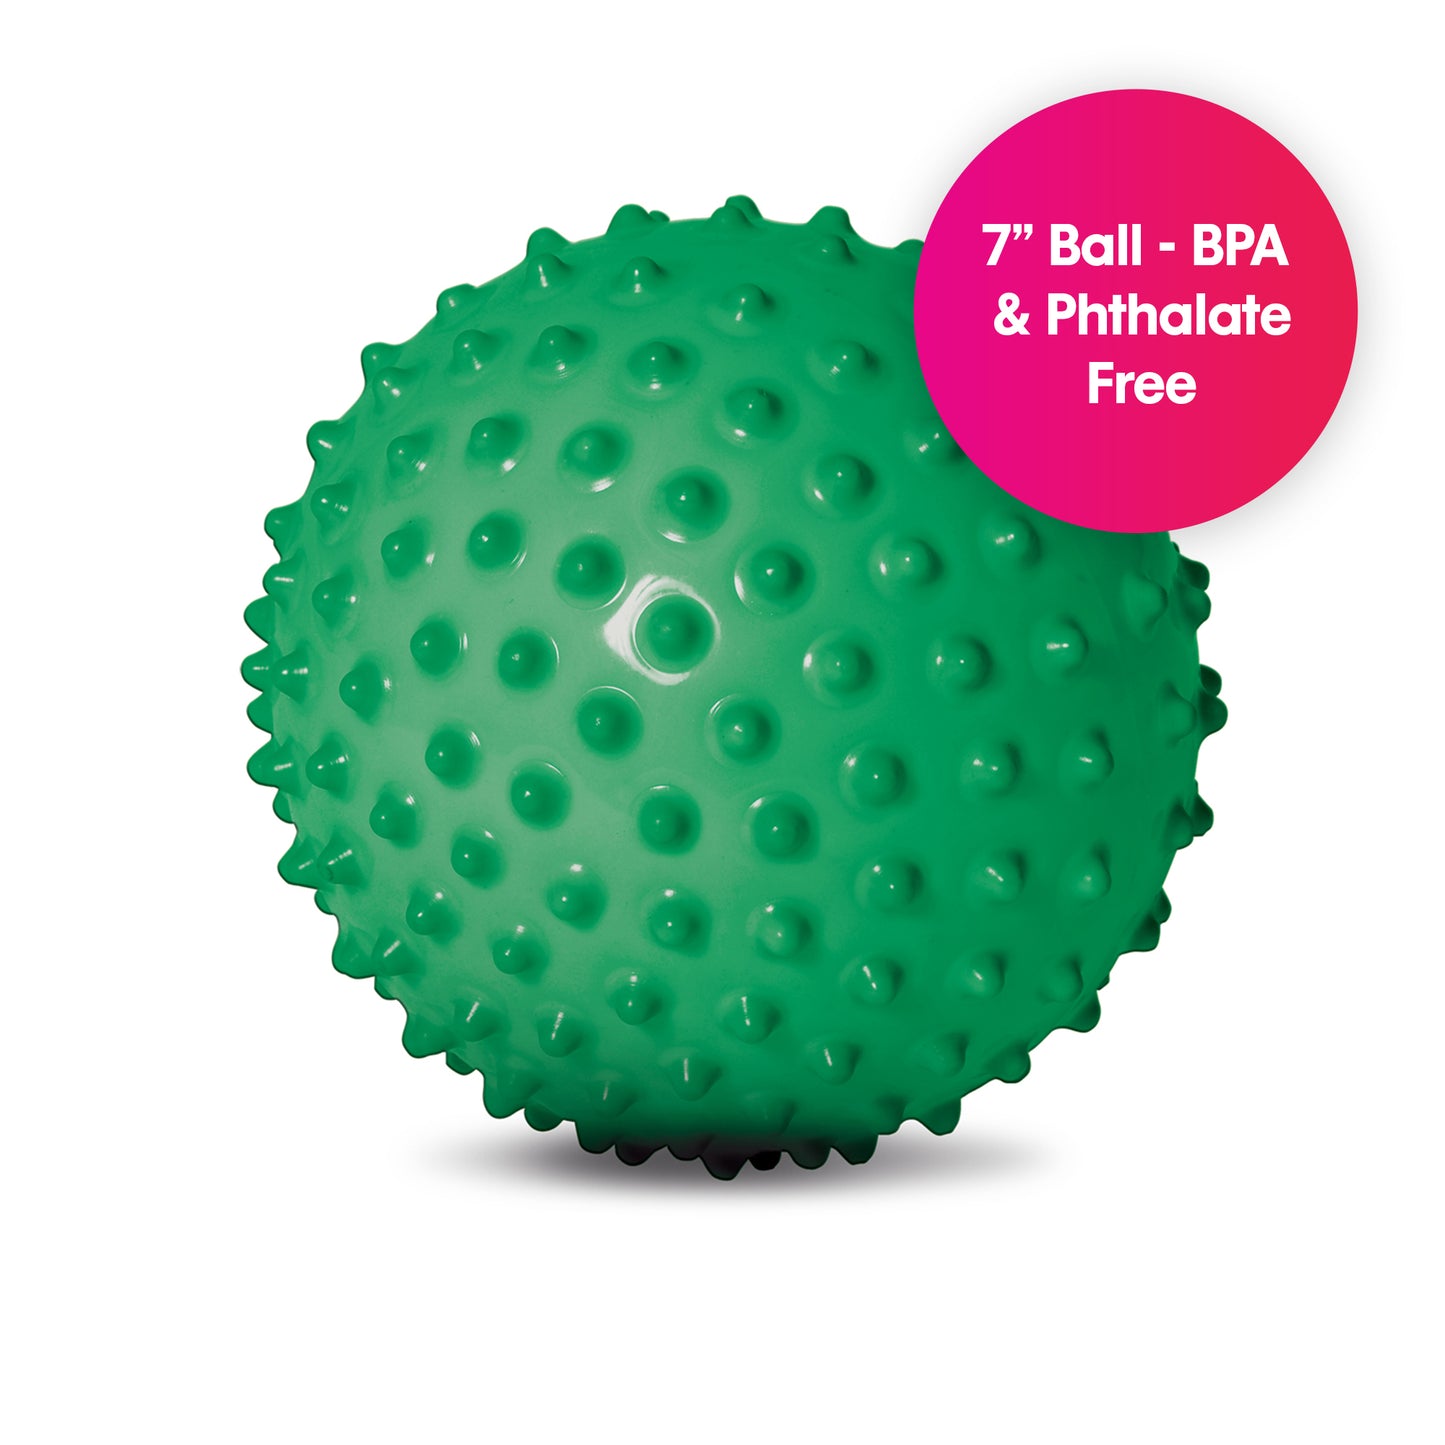 The Original Sensory Ball, Opaque (Green)